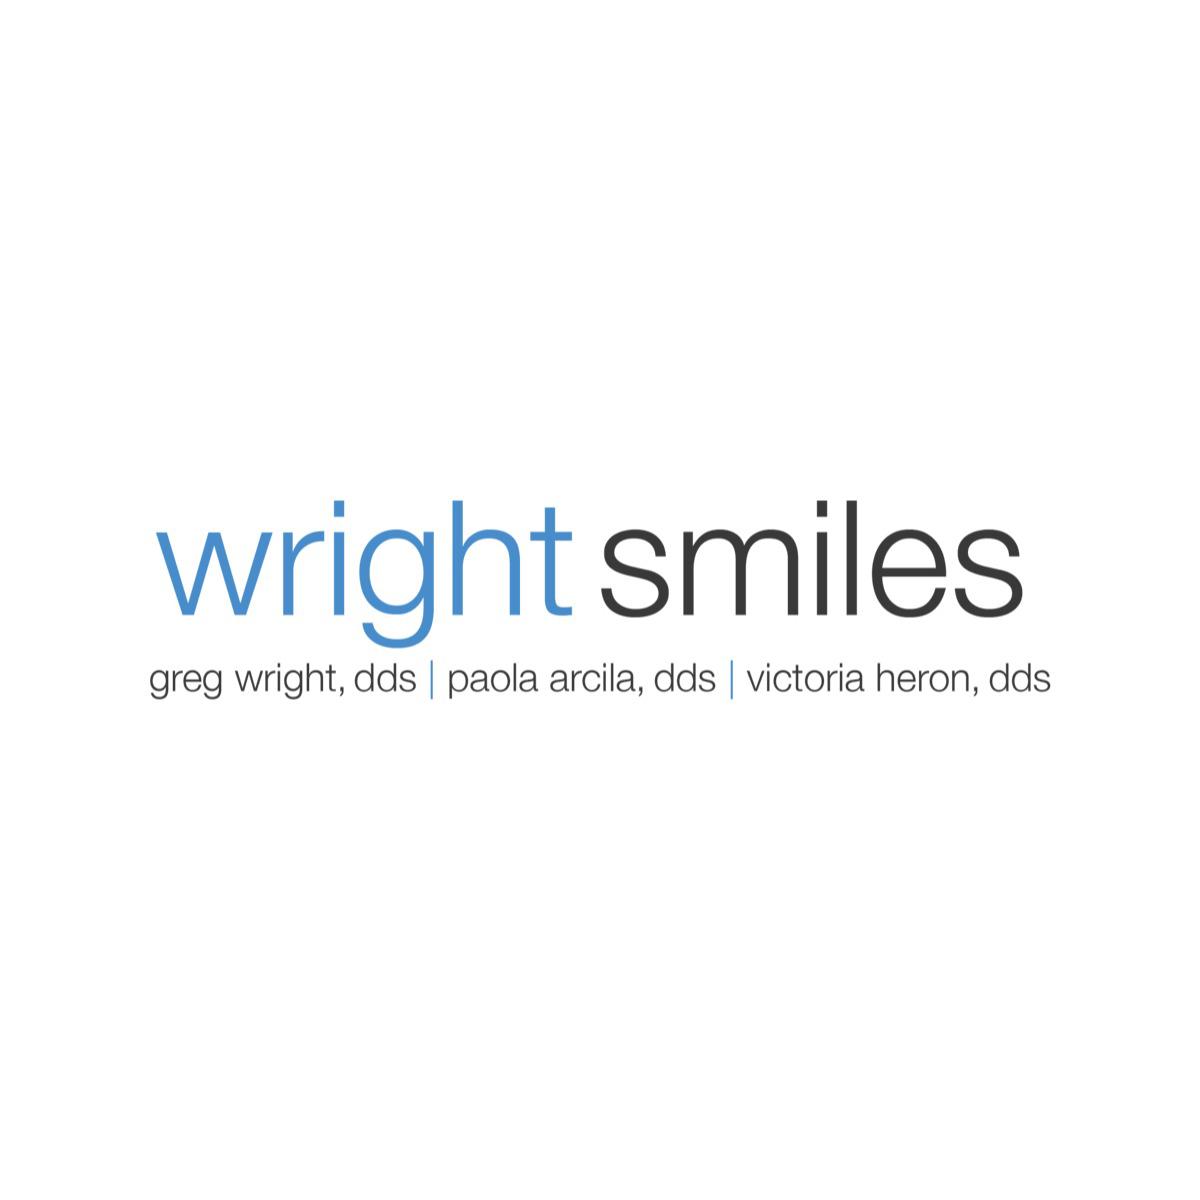 Wright Smiles